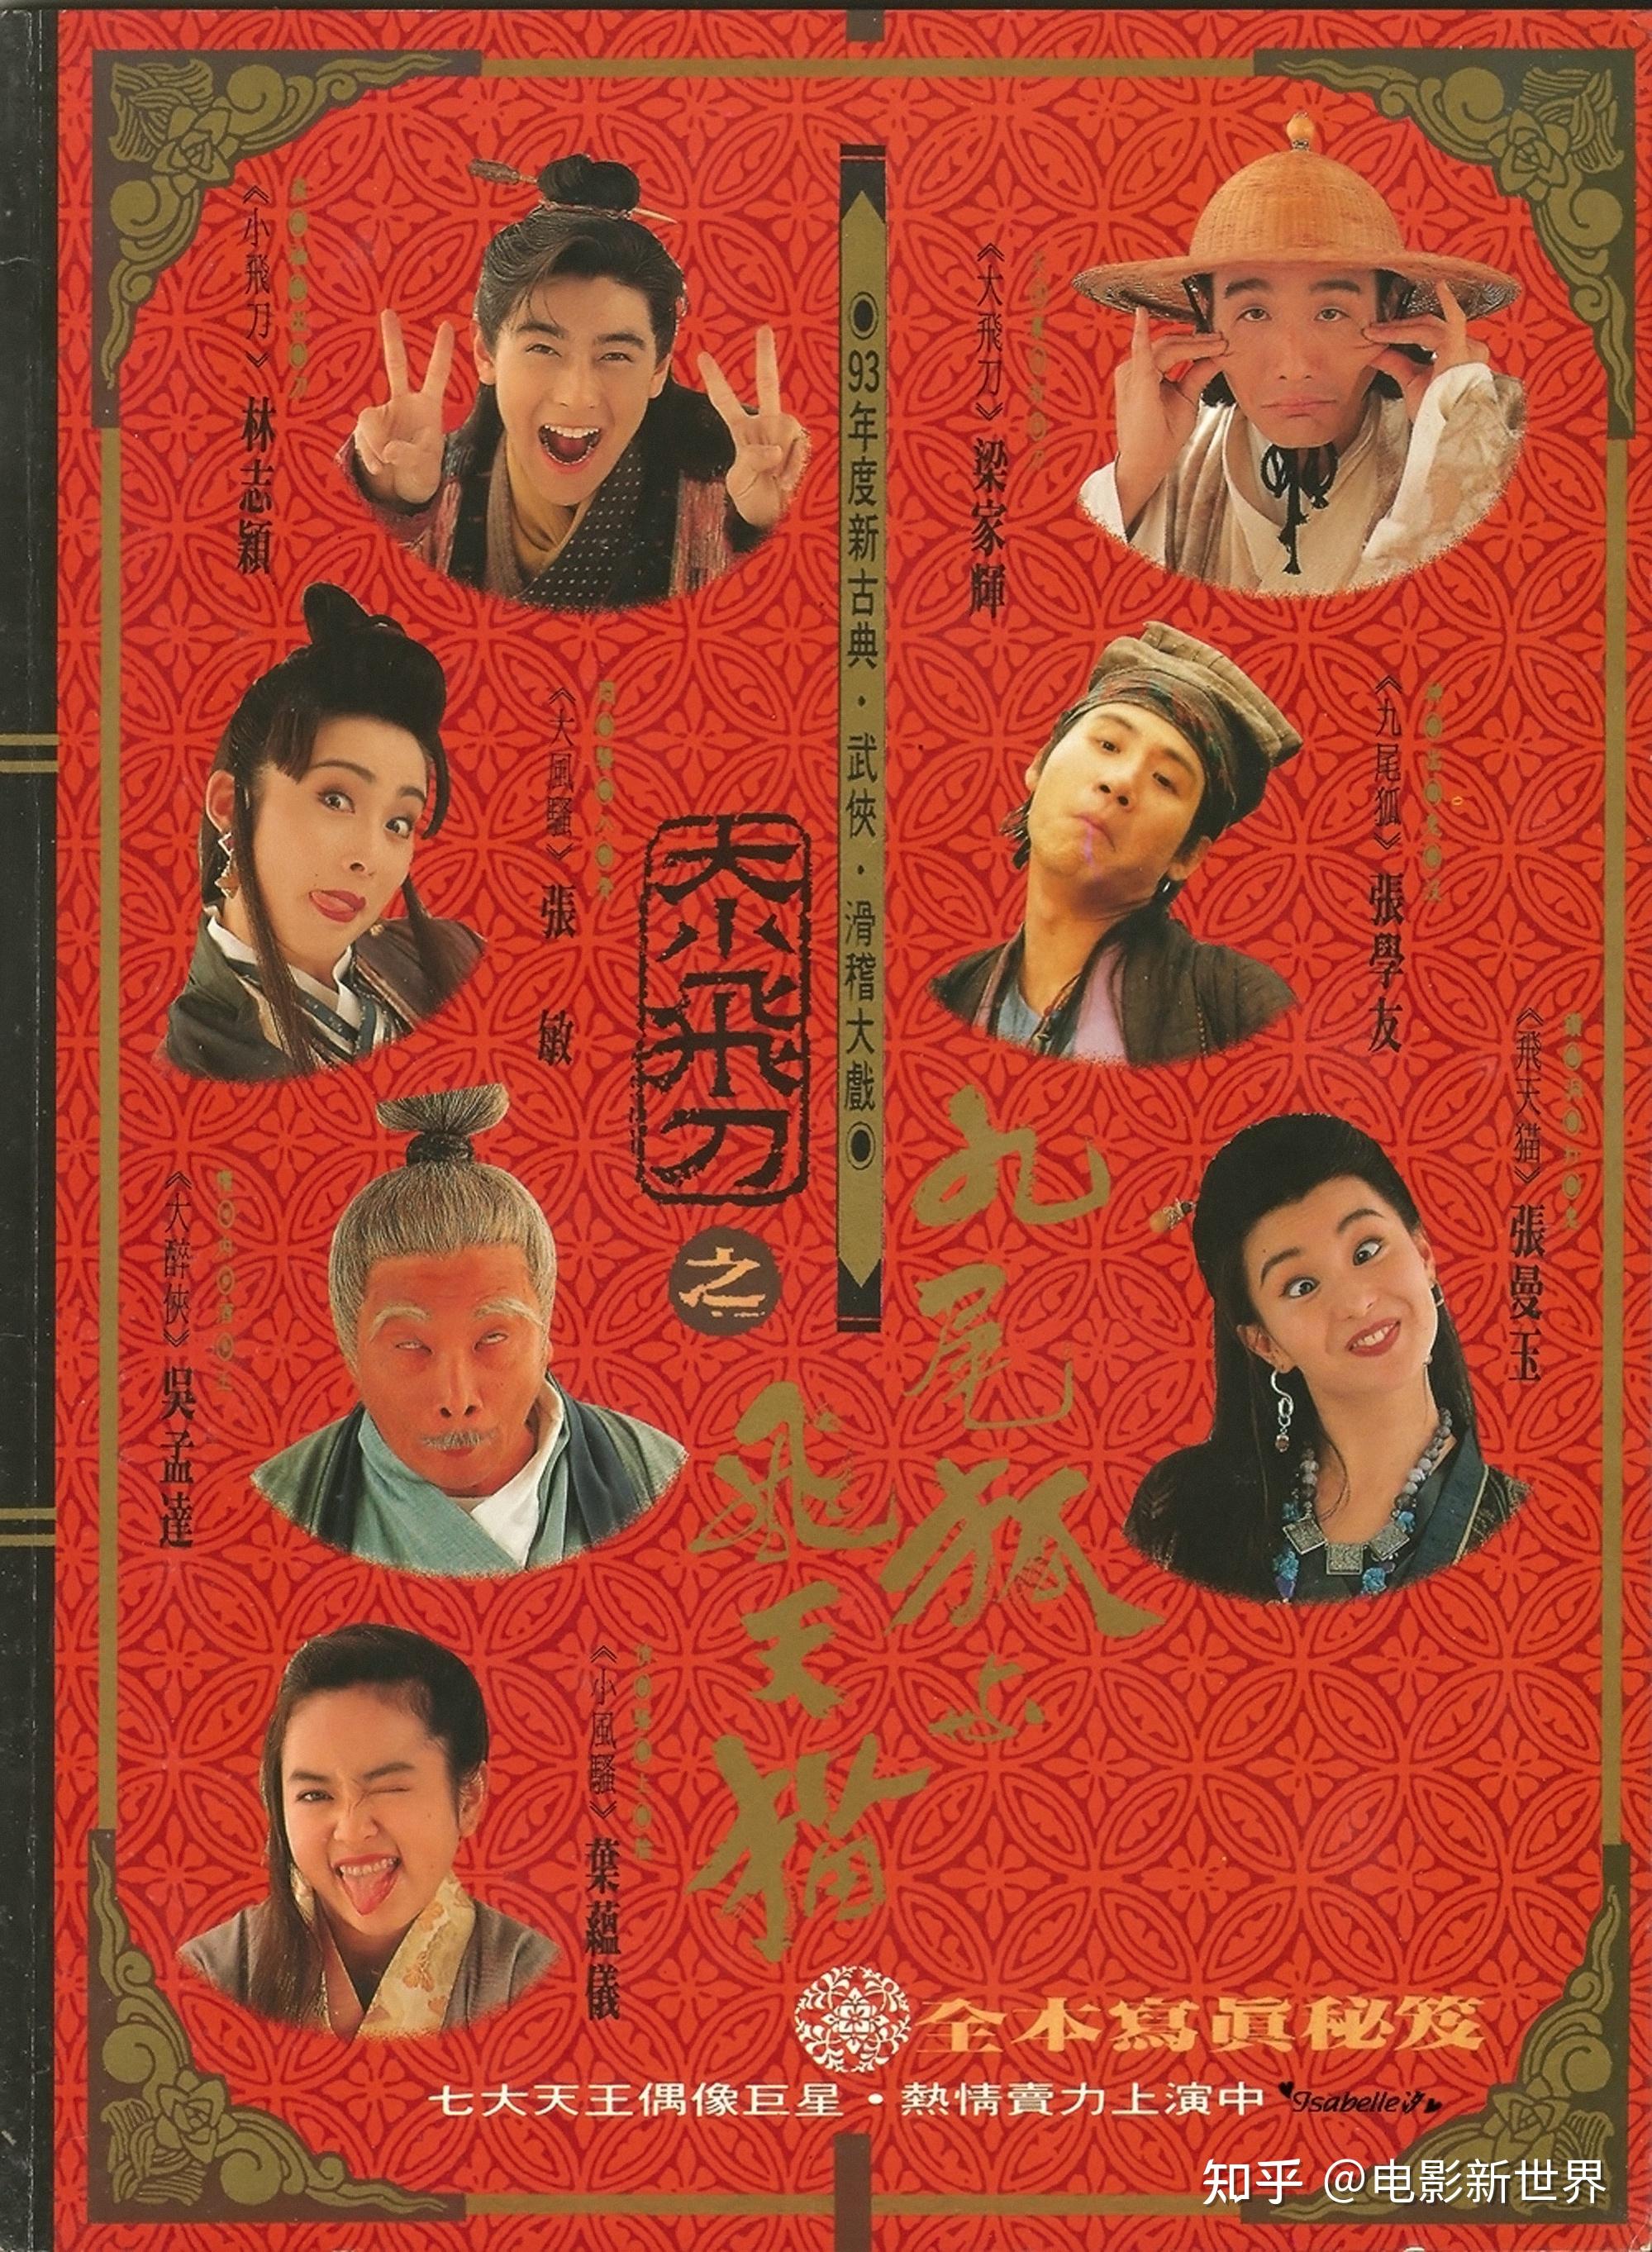 1993年,吴孟达出演了武侠电影《神经刀与飞天猫》,饰演大醉侠,与张